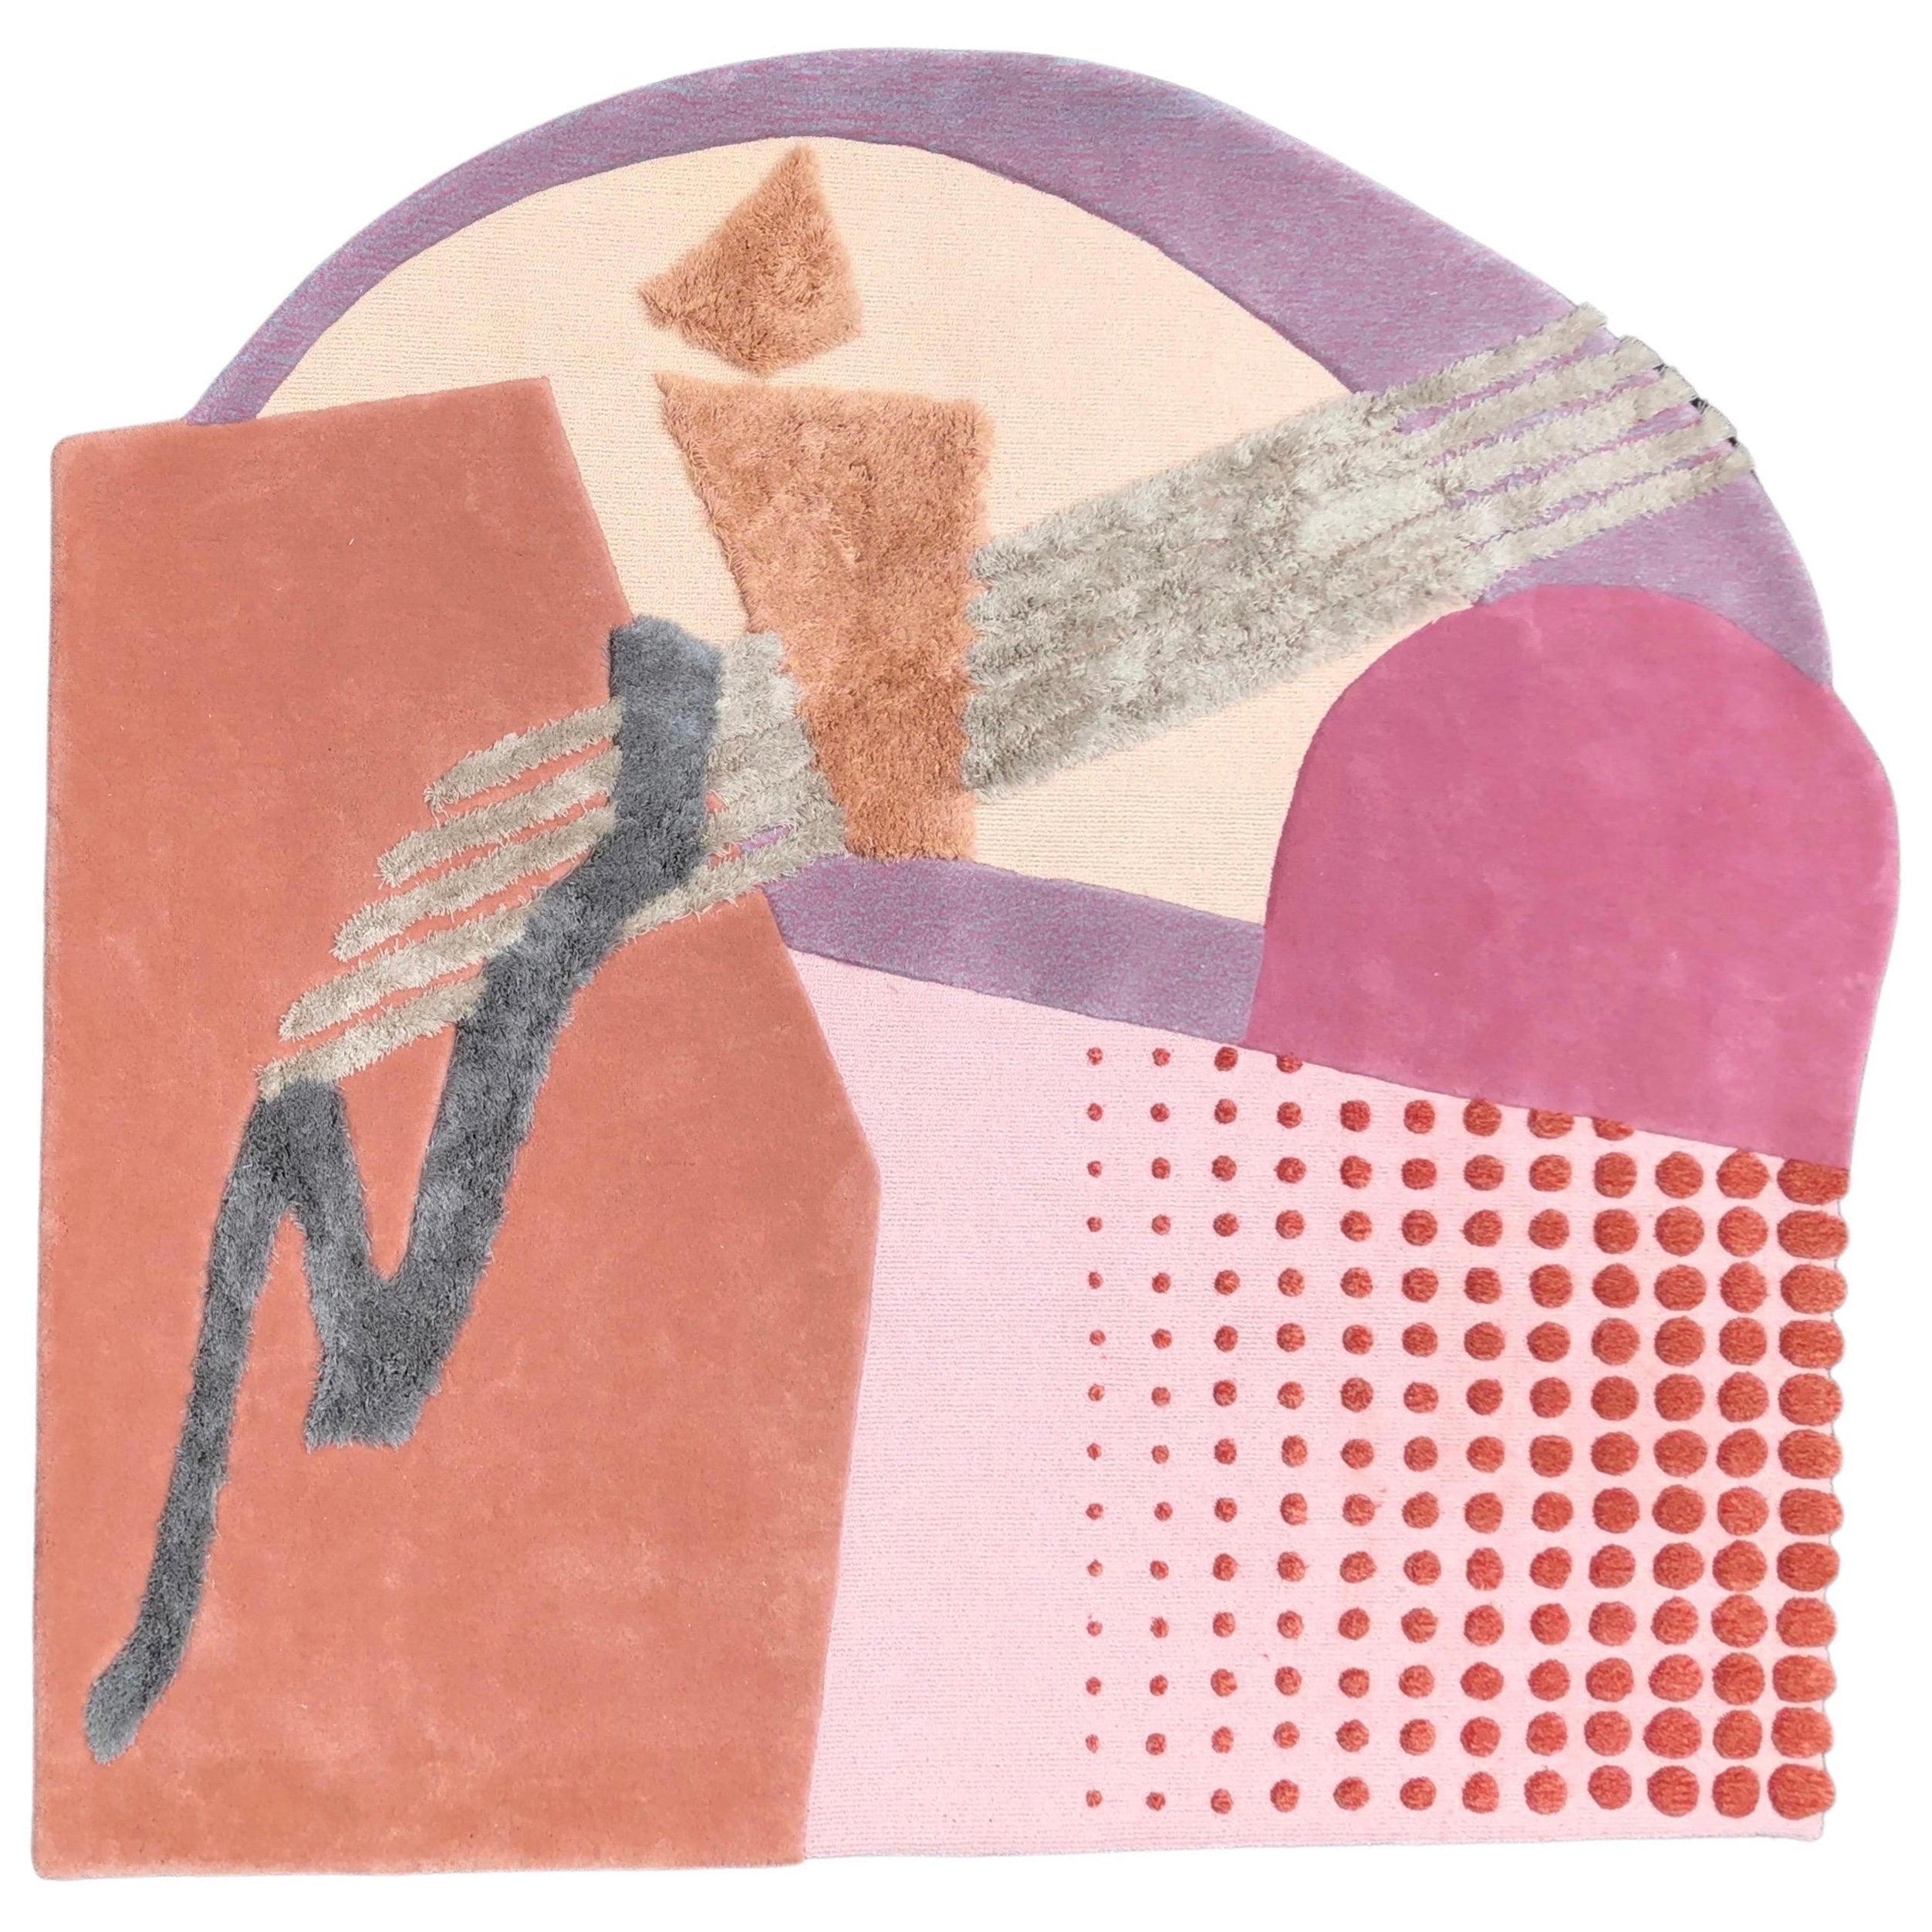 Unregelmäßige Form mit zeitgenössischem Stil mit rosa Terrakotta-Schirmen von RAG